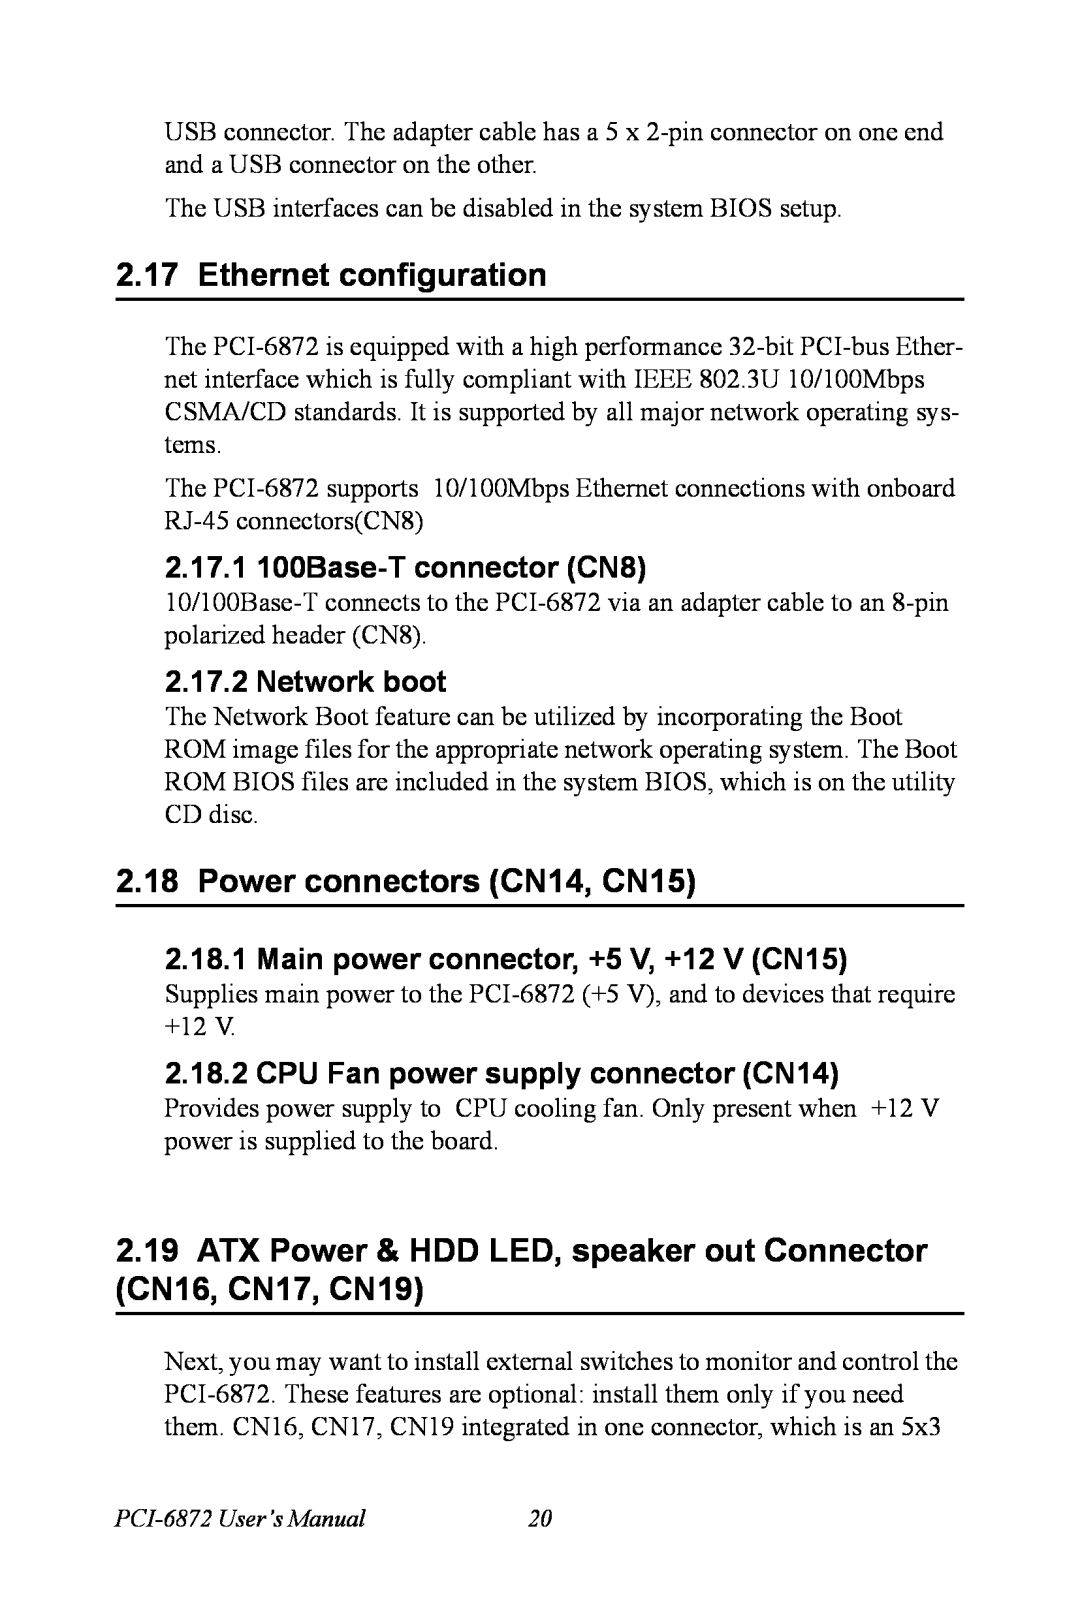 Advantech PCI-6872 Ethernet configuration, Power connectors CN14, CN15, 2.17.1 100Base-T connector CN8, Network boot 